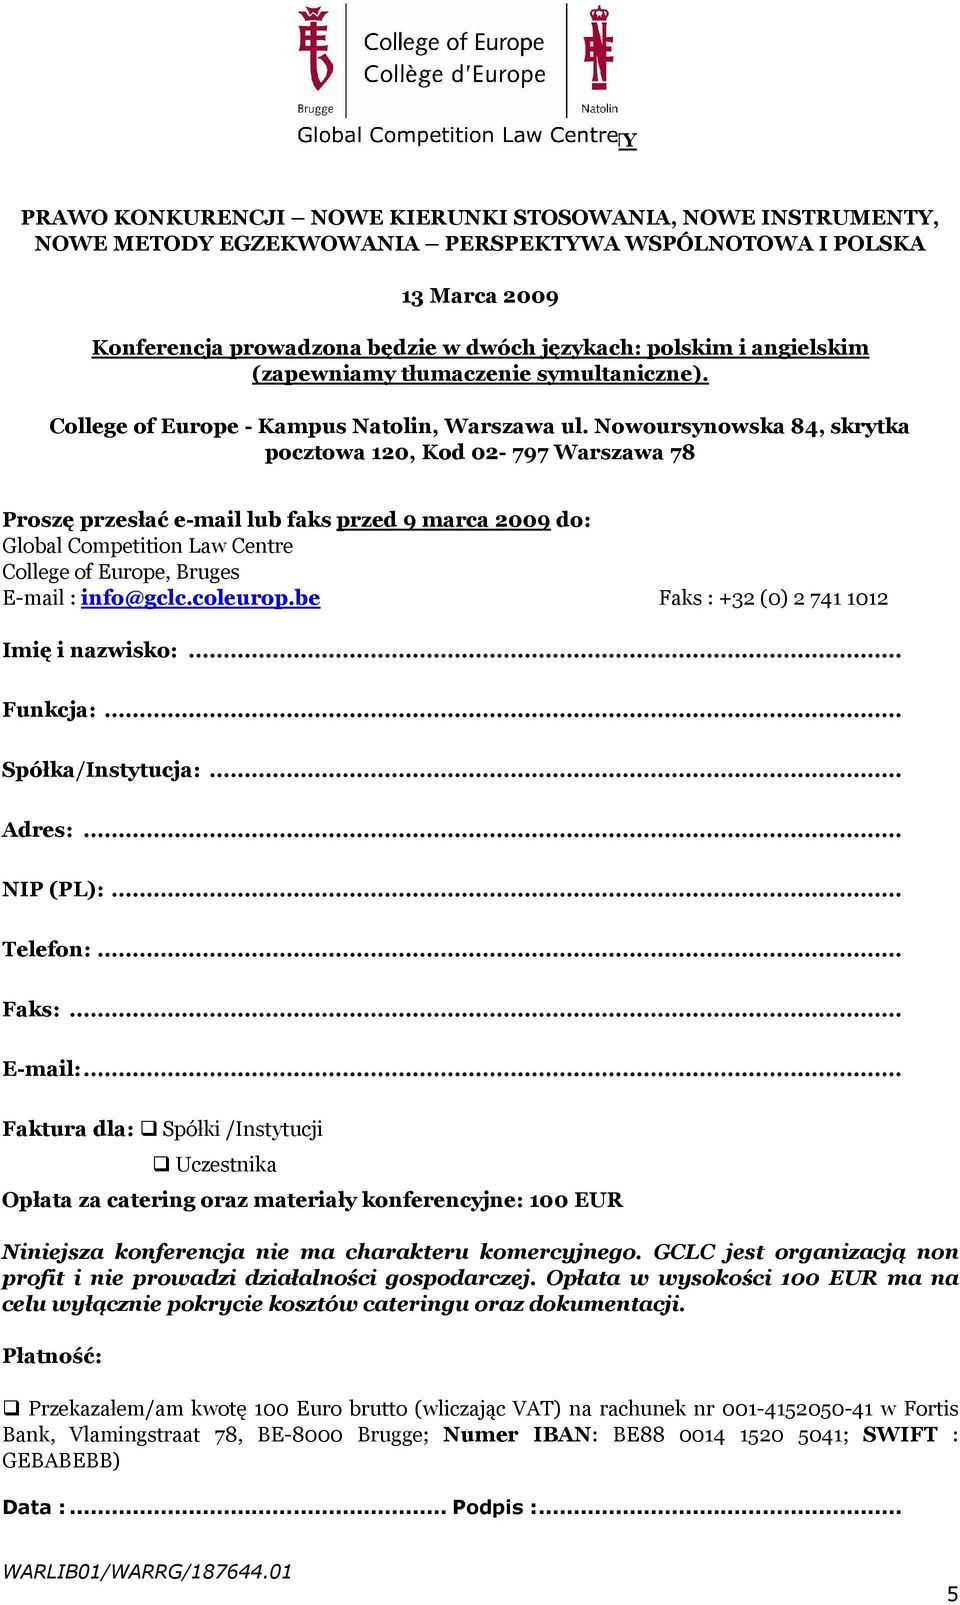 Nowoursynowska 84, skrytka pocztowa 120, Kod 02-797 Warszawa 78 Proszę przesłać e-mail lub faks przed 9 marca 2009 do: Global Competition Law Centre College of Europe, Bruges E-mail : info@gclc.